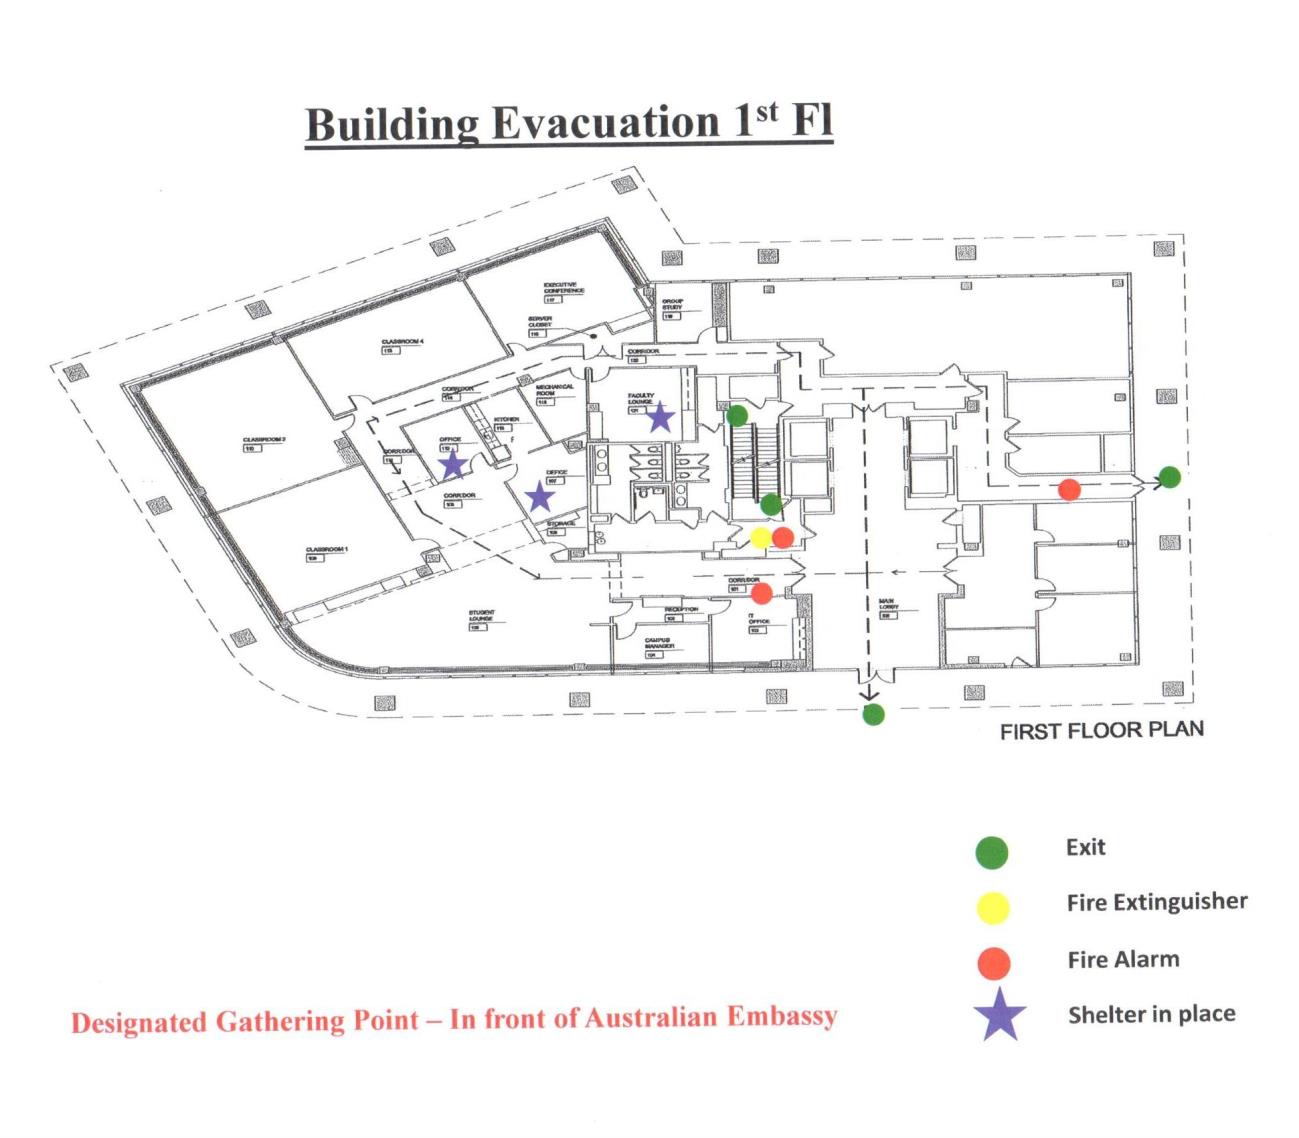 1st floor evacuation plan